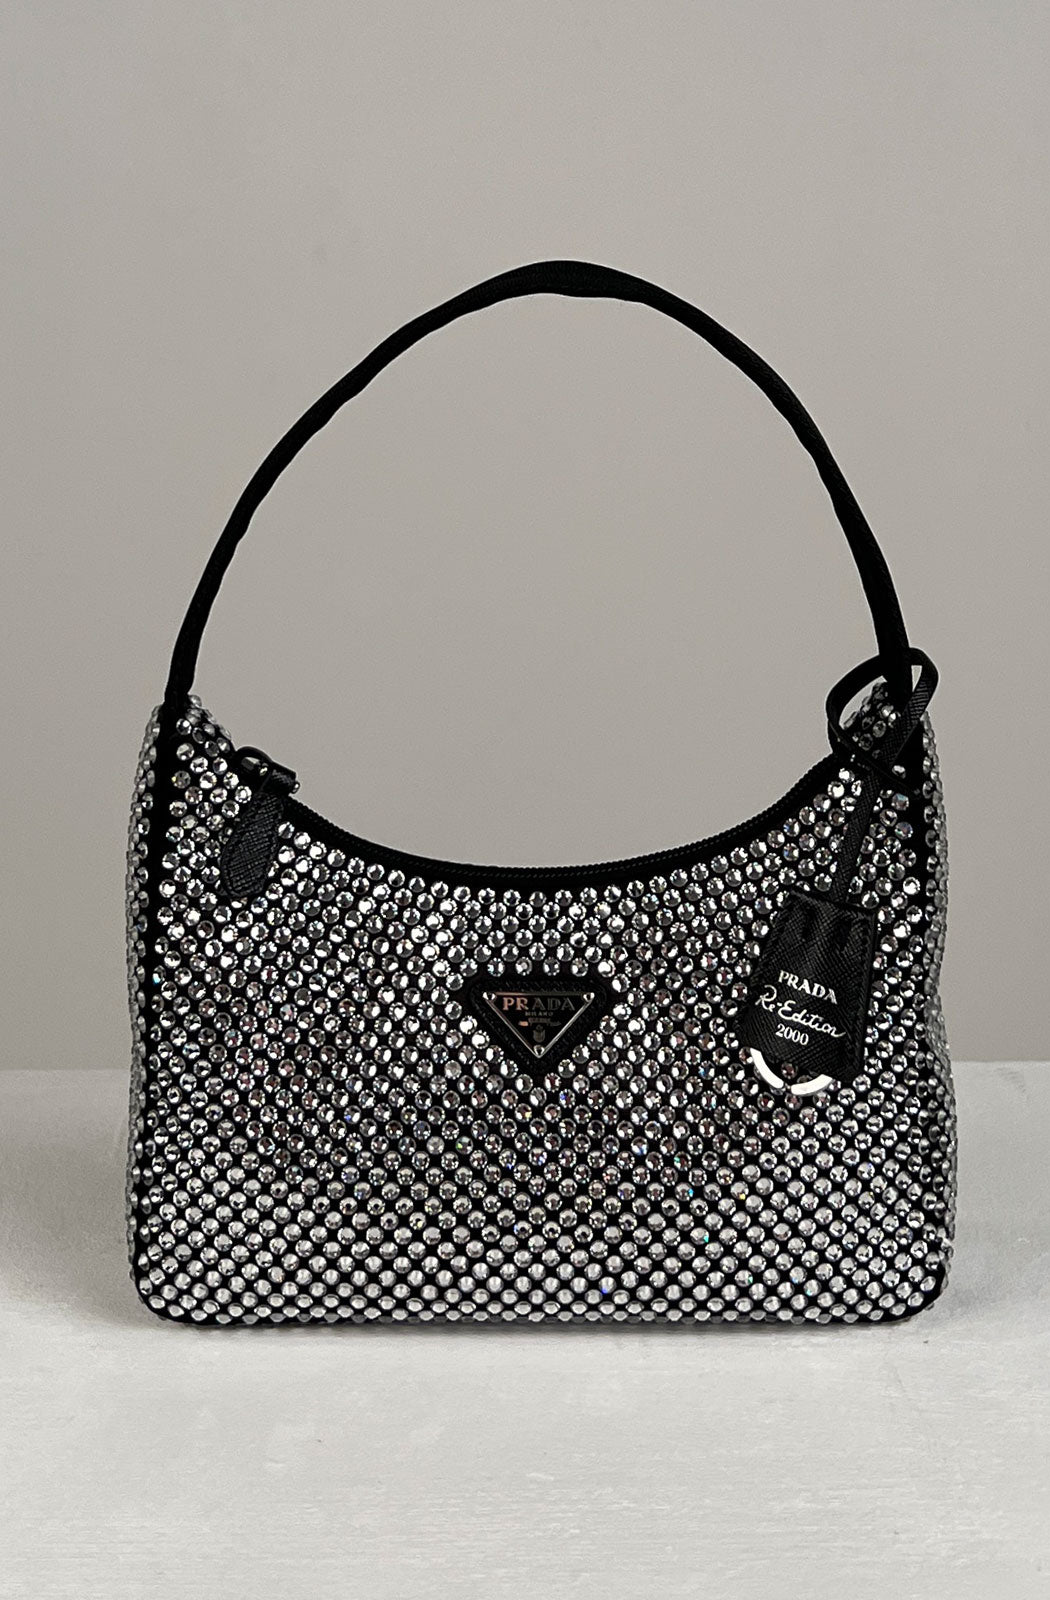 Black Satin Crystal Embellished Re-Edition 2000 Mini Bag